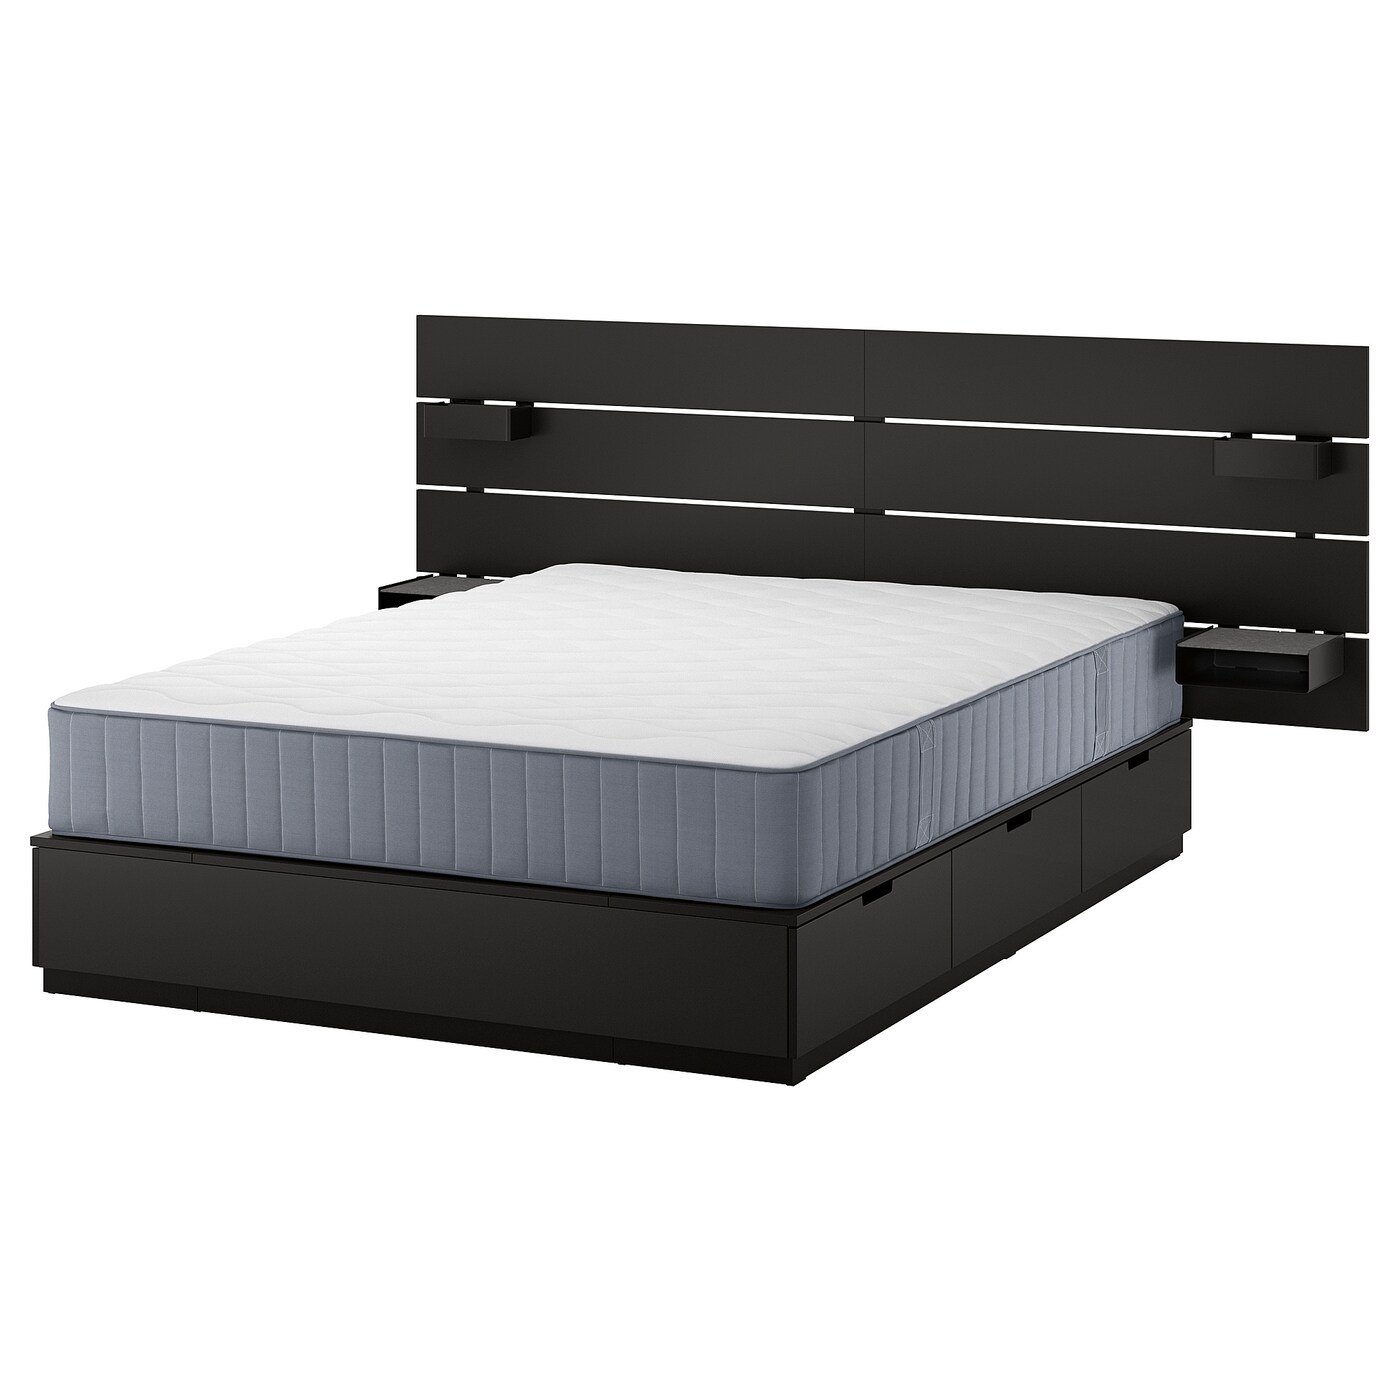 Каркас кровати с контейнером и матрасом - IKEA NORDLI, 200х140 см, матрас жесткий, черный, НОРДЛИ ИКЕА